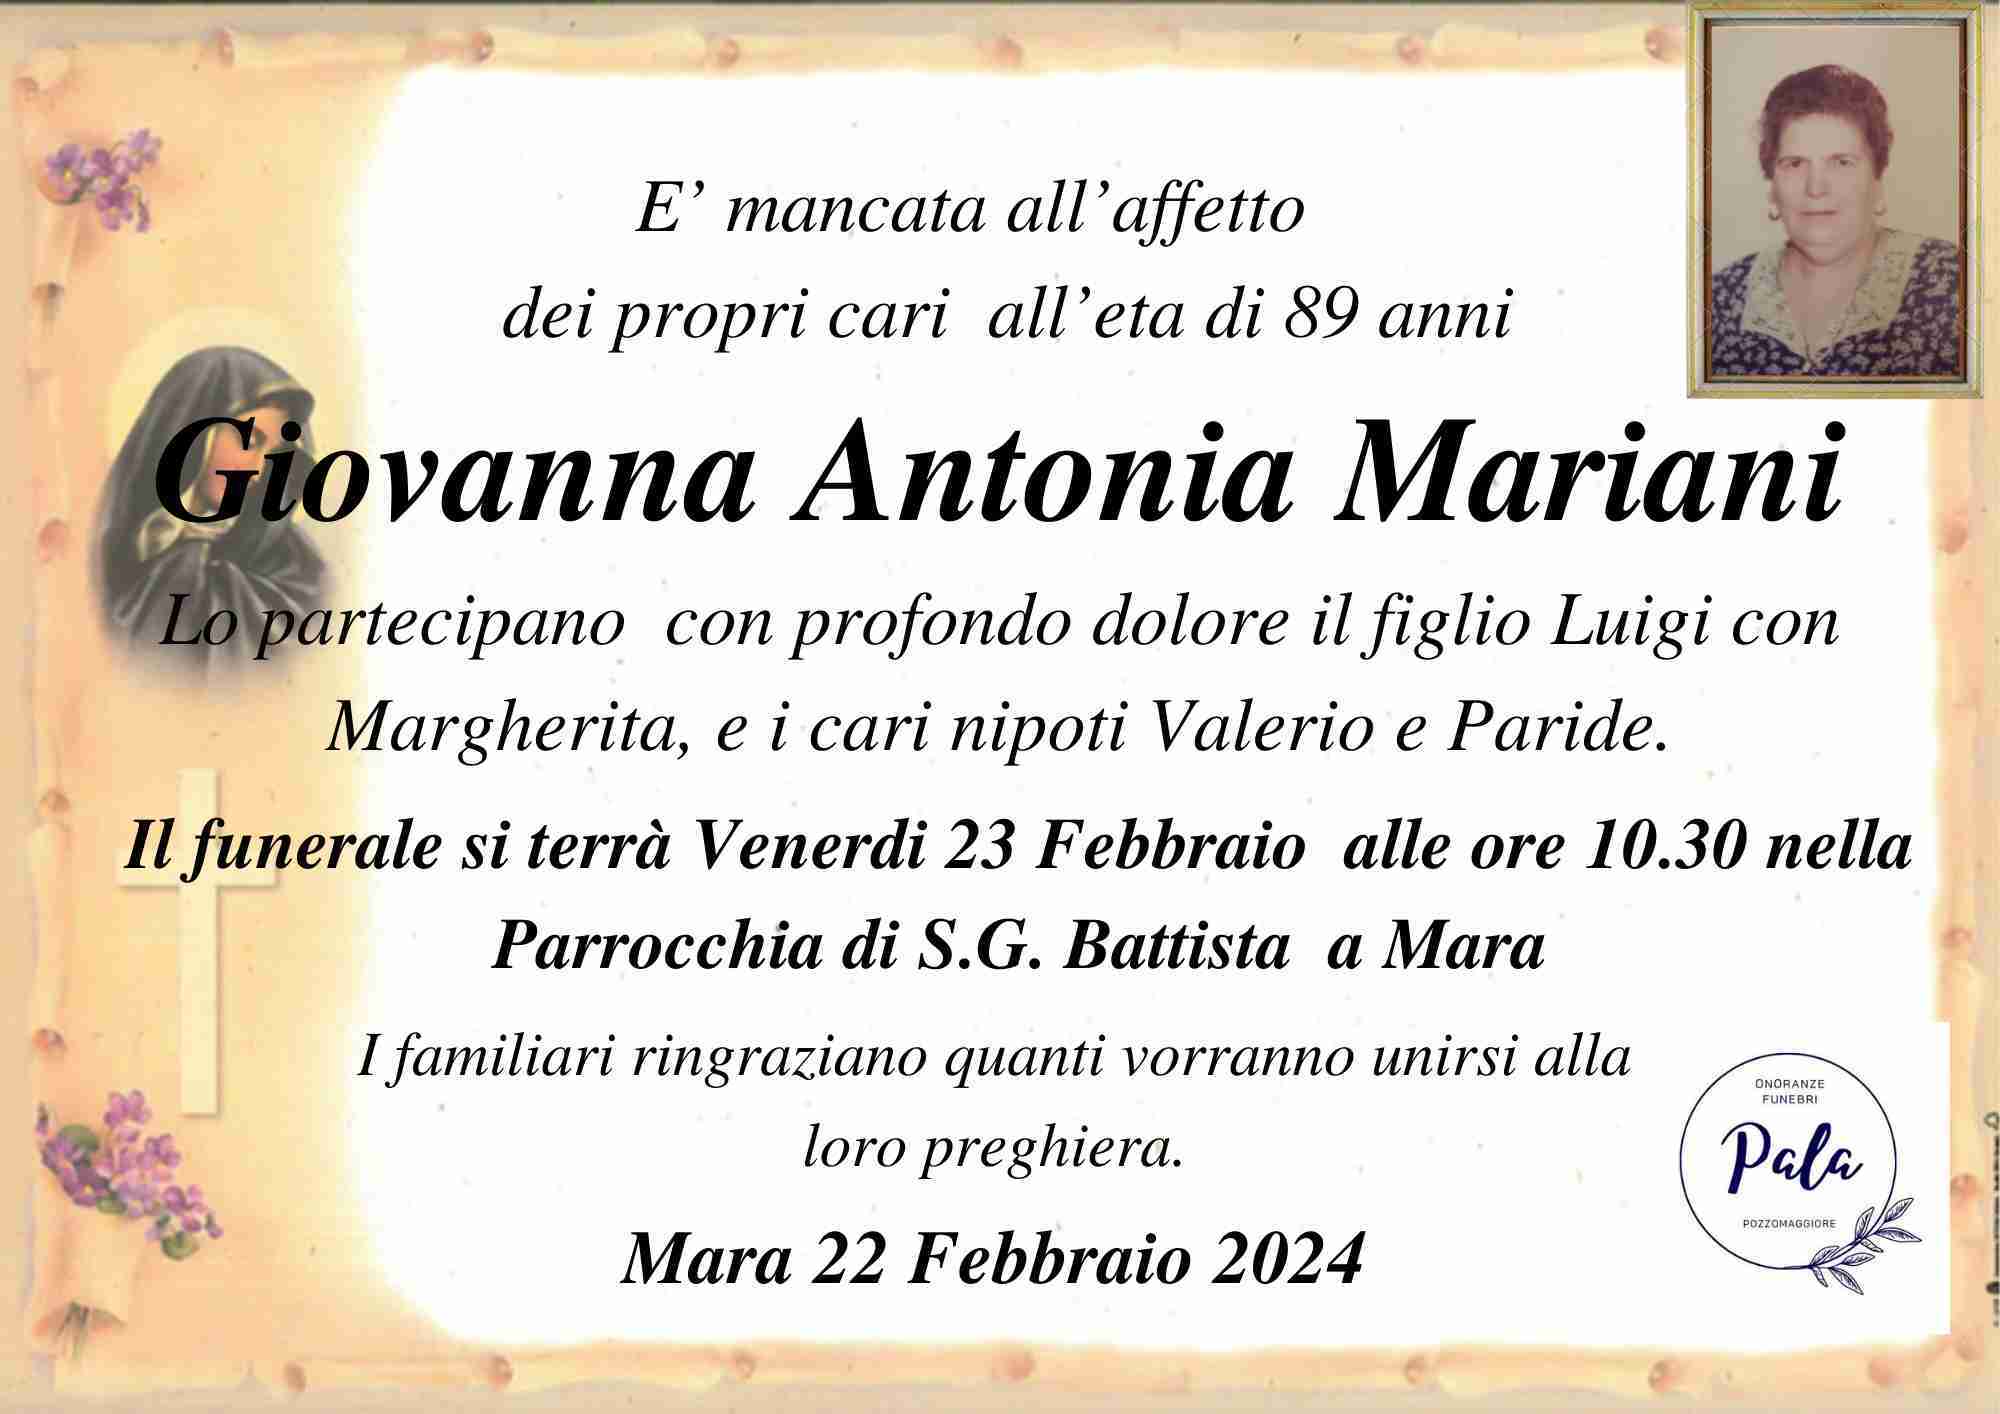 Giovanna Antonia Mariani